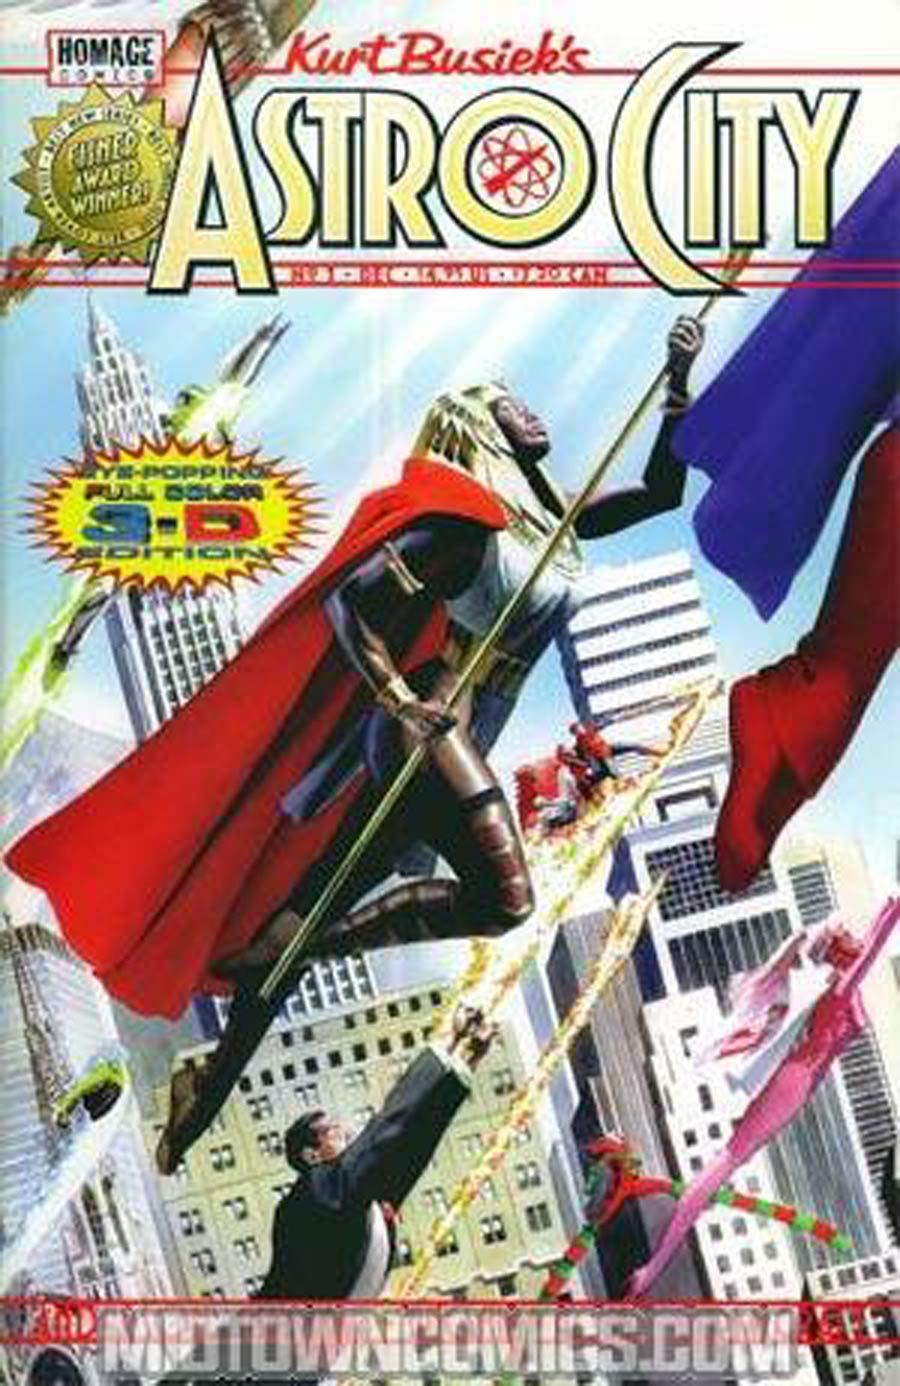 Kurt Busieks Astro City Vol 2 #1 Cover D 3-D Edition Without Glasses